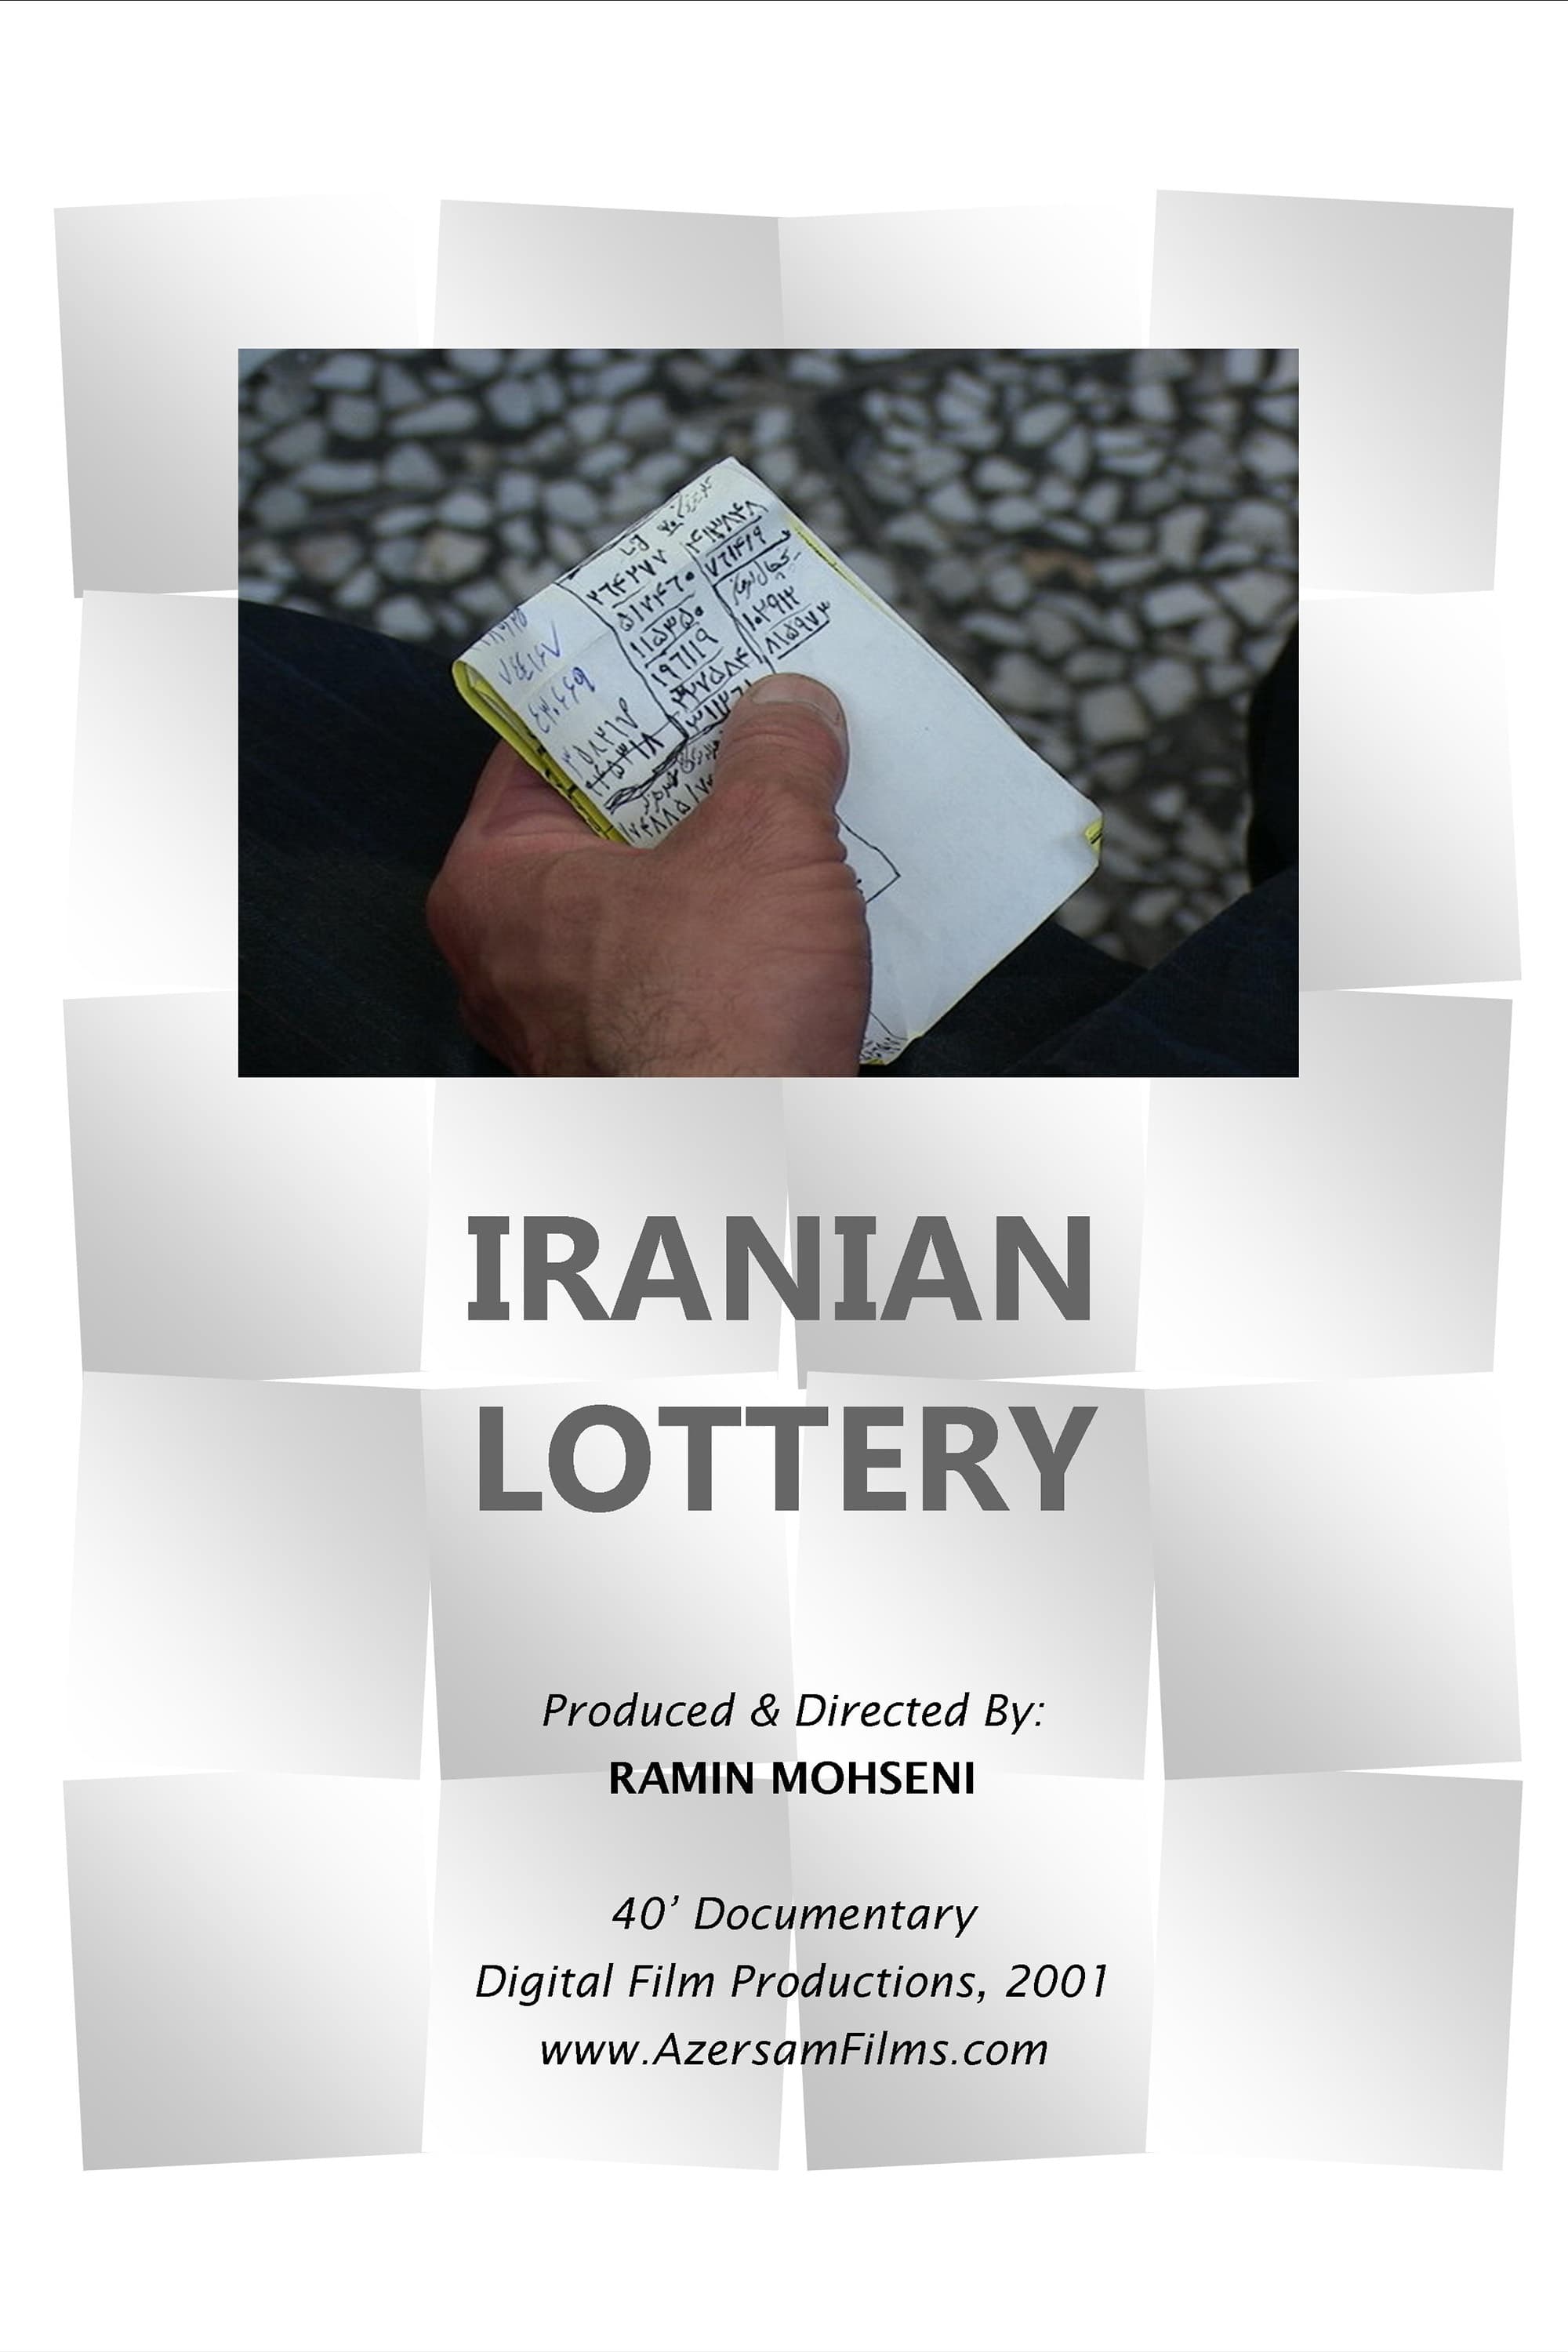 Iranian Lottery